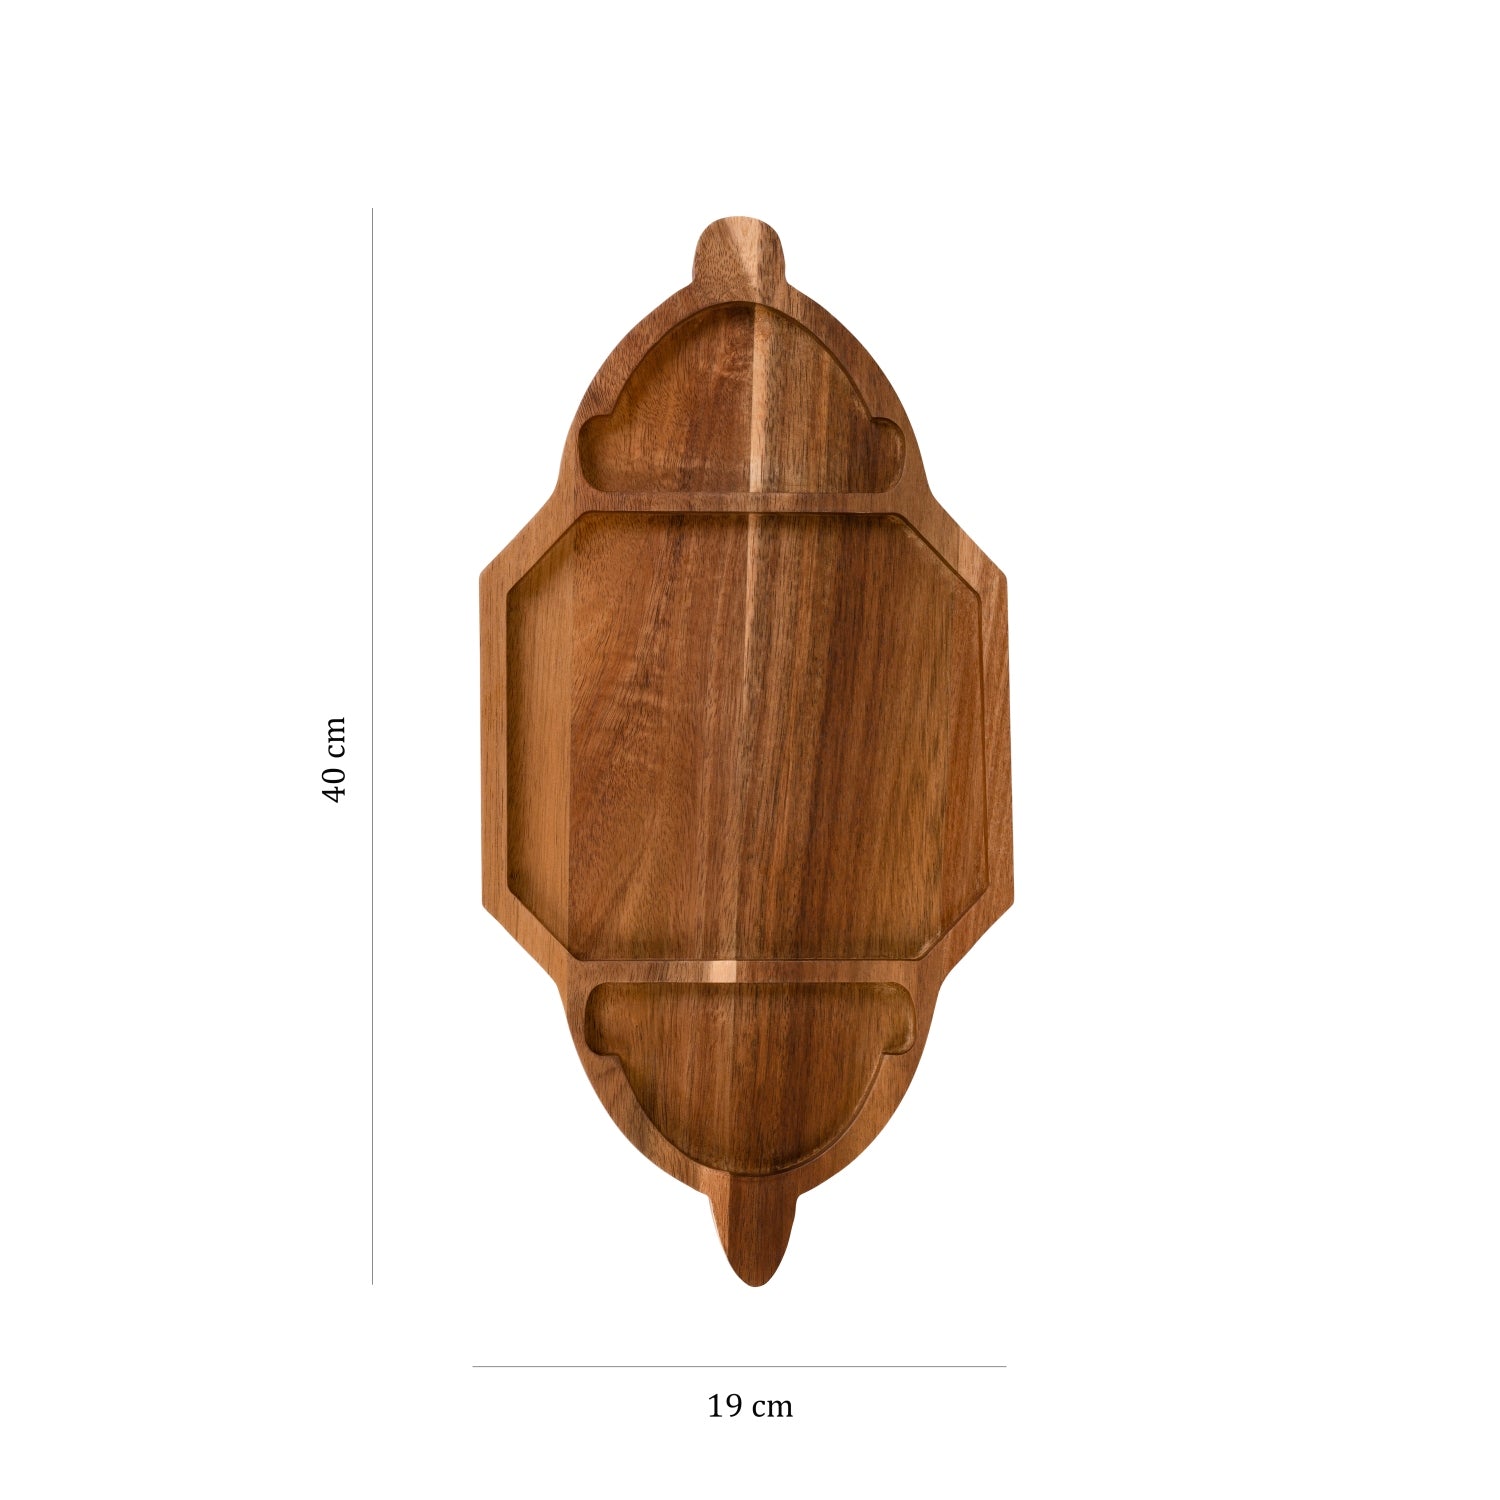 Premium Wooden Platter - Lantern